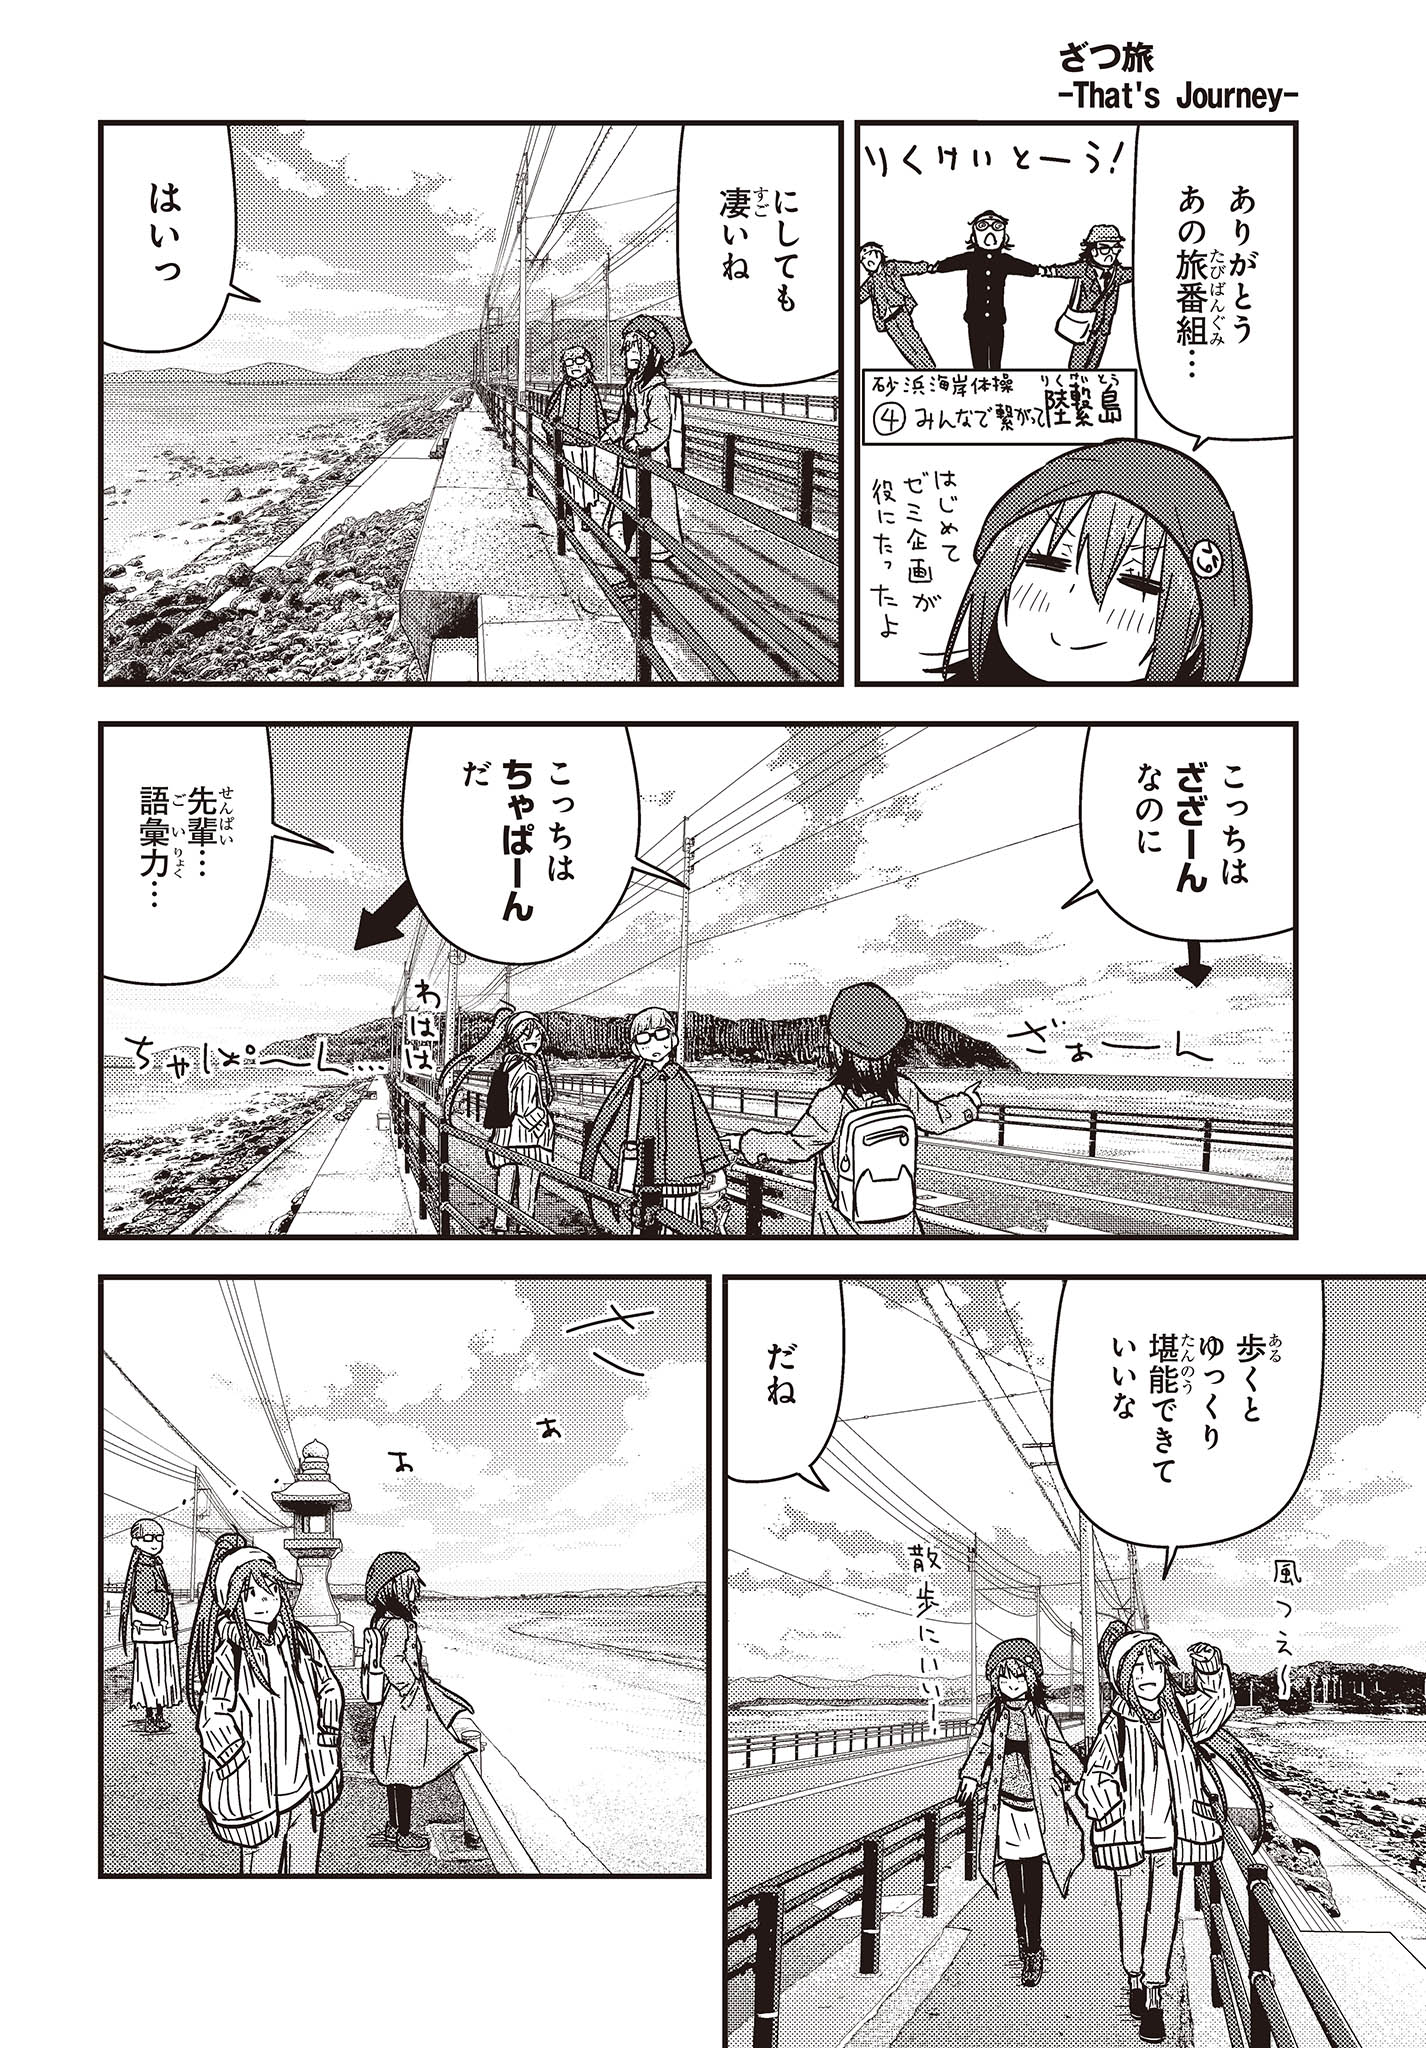 ざつ旅-That’s Journey- 第30話 - Page 16